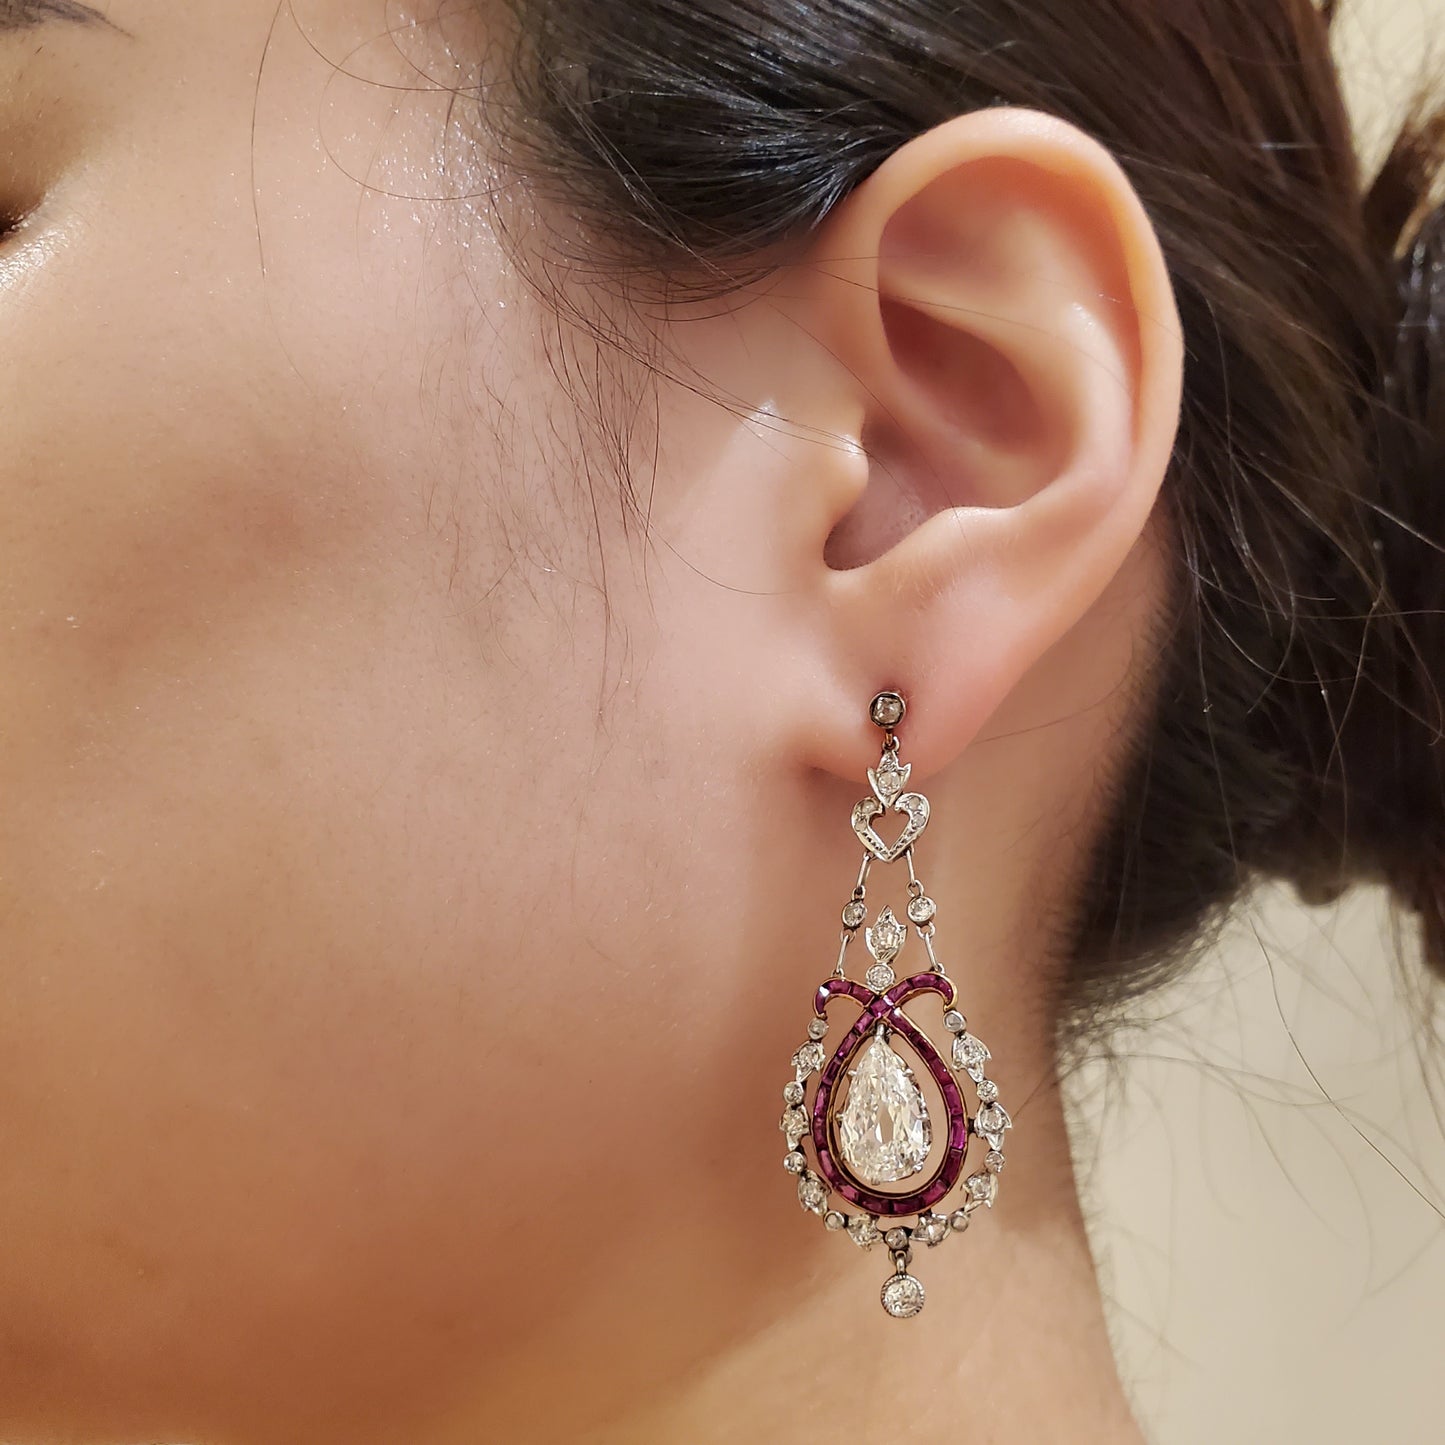 Edwardian Platinum Diamond & Ruby Earrings worn on ear